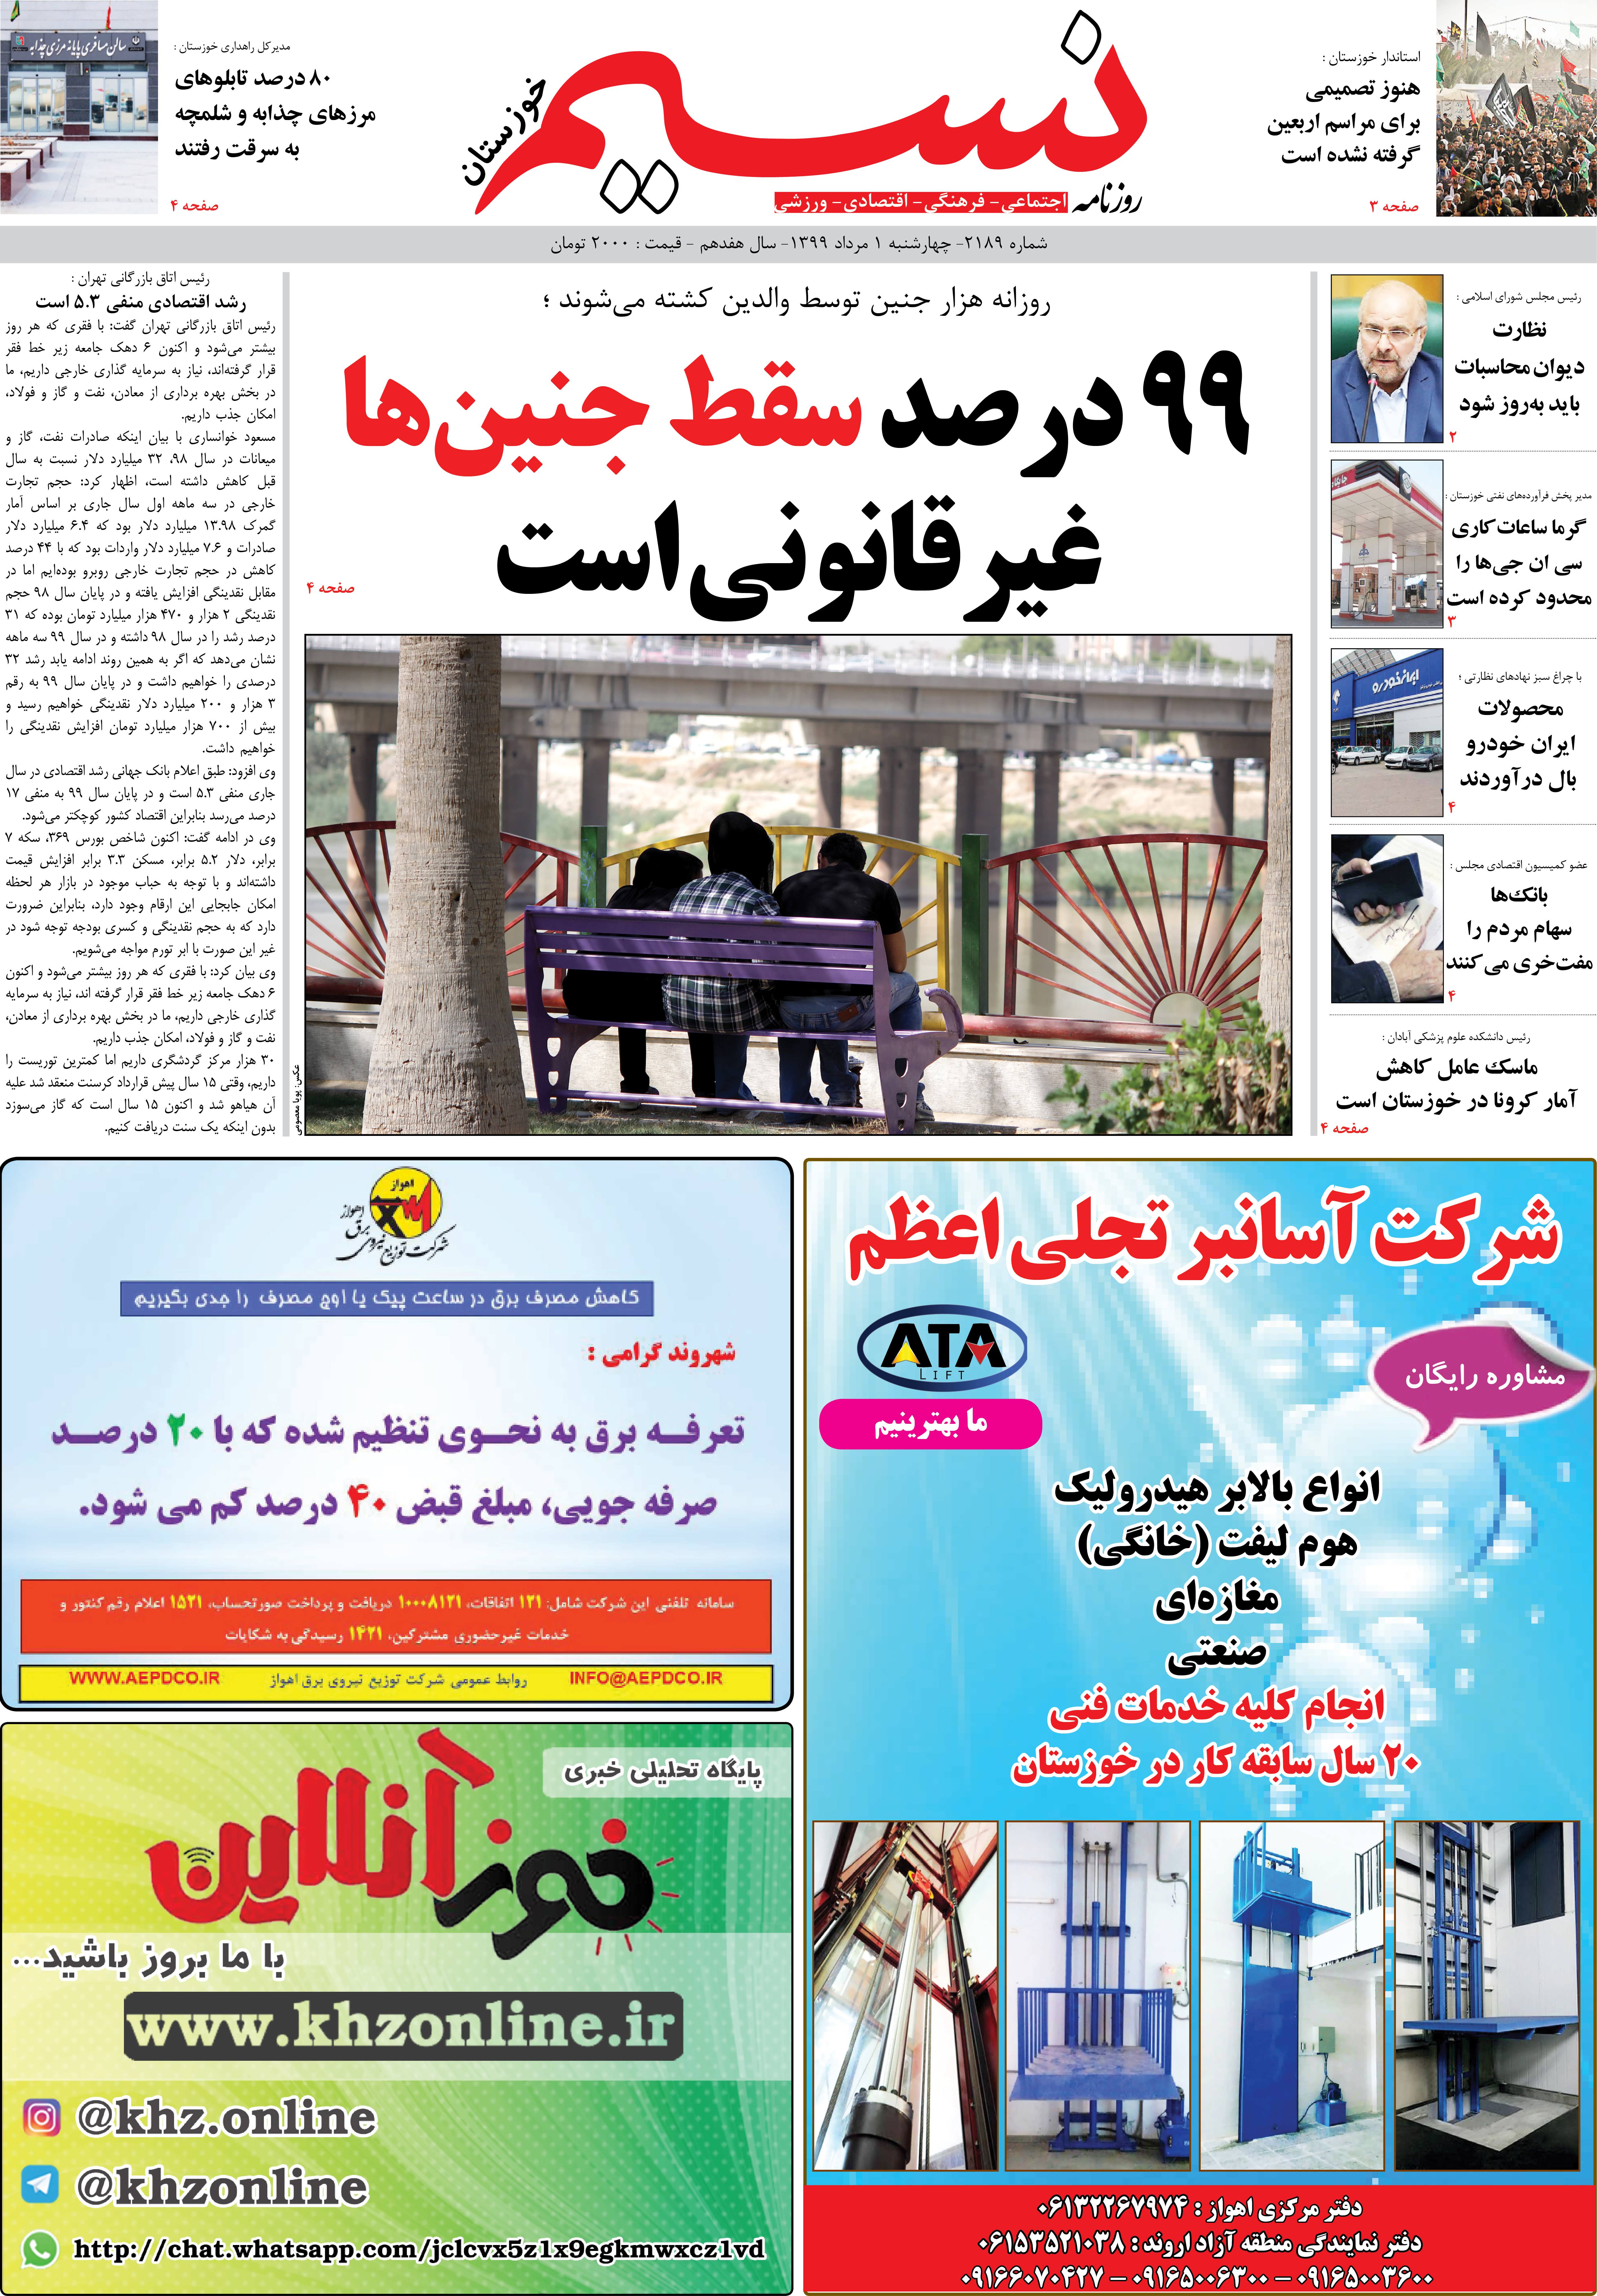 صفحه اصلی روزنامه نسیم شماره 2189 